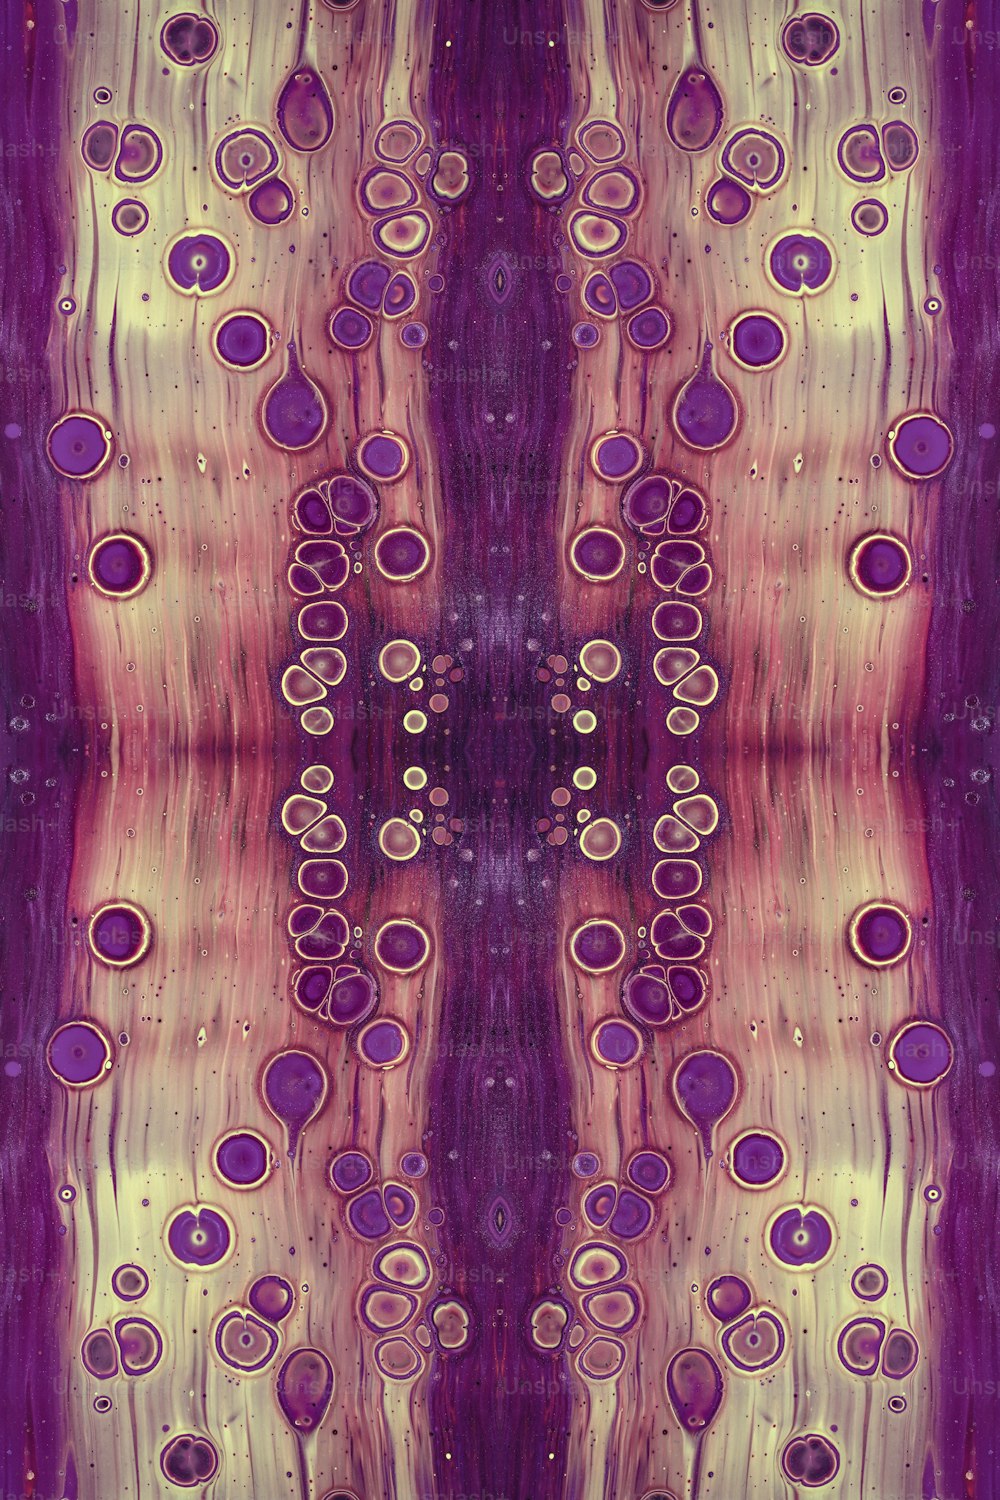 Una pintura abstracta púrpura y blanca con círculos